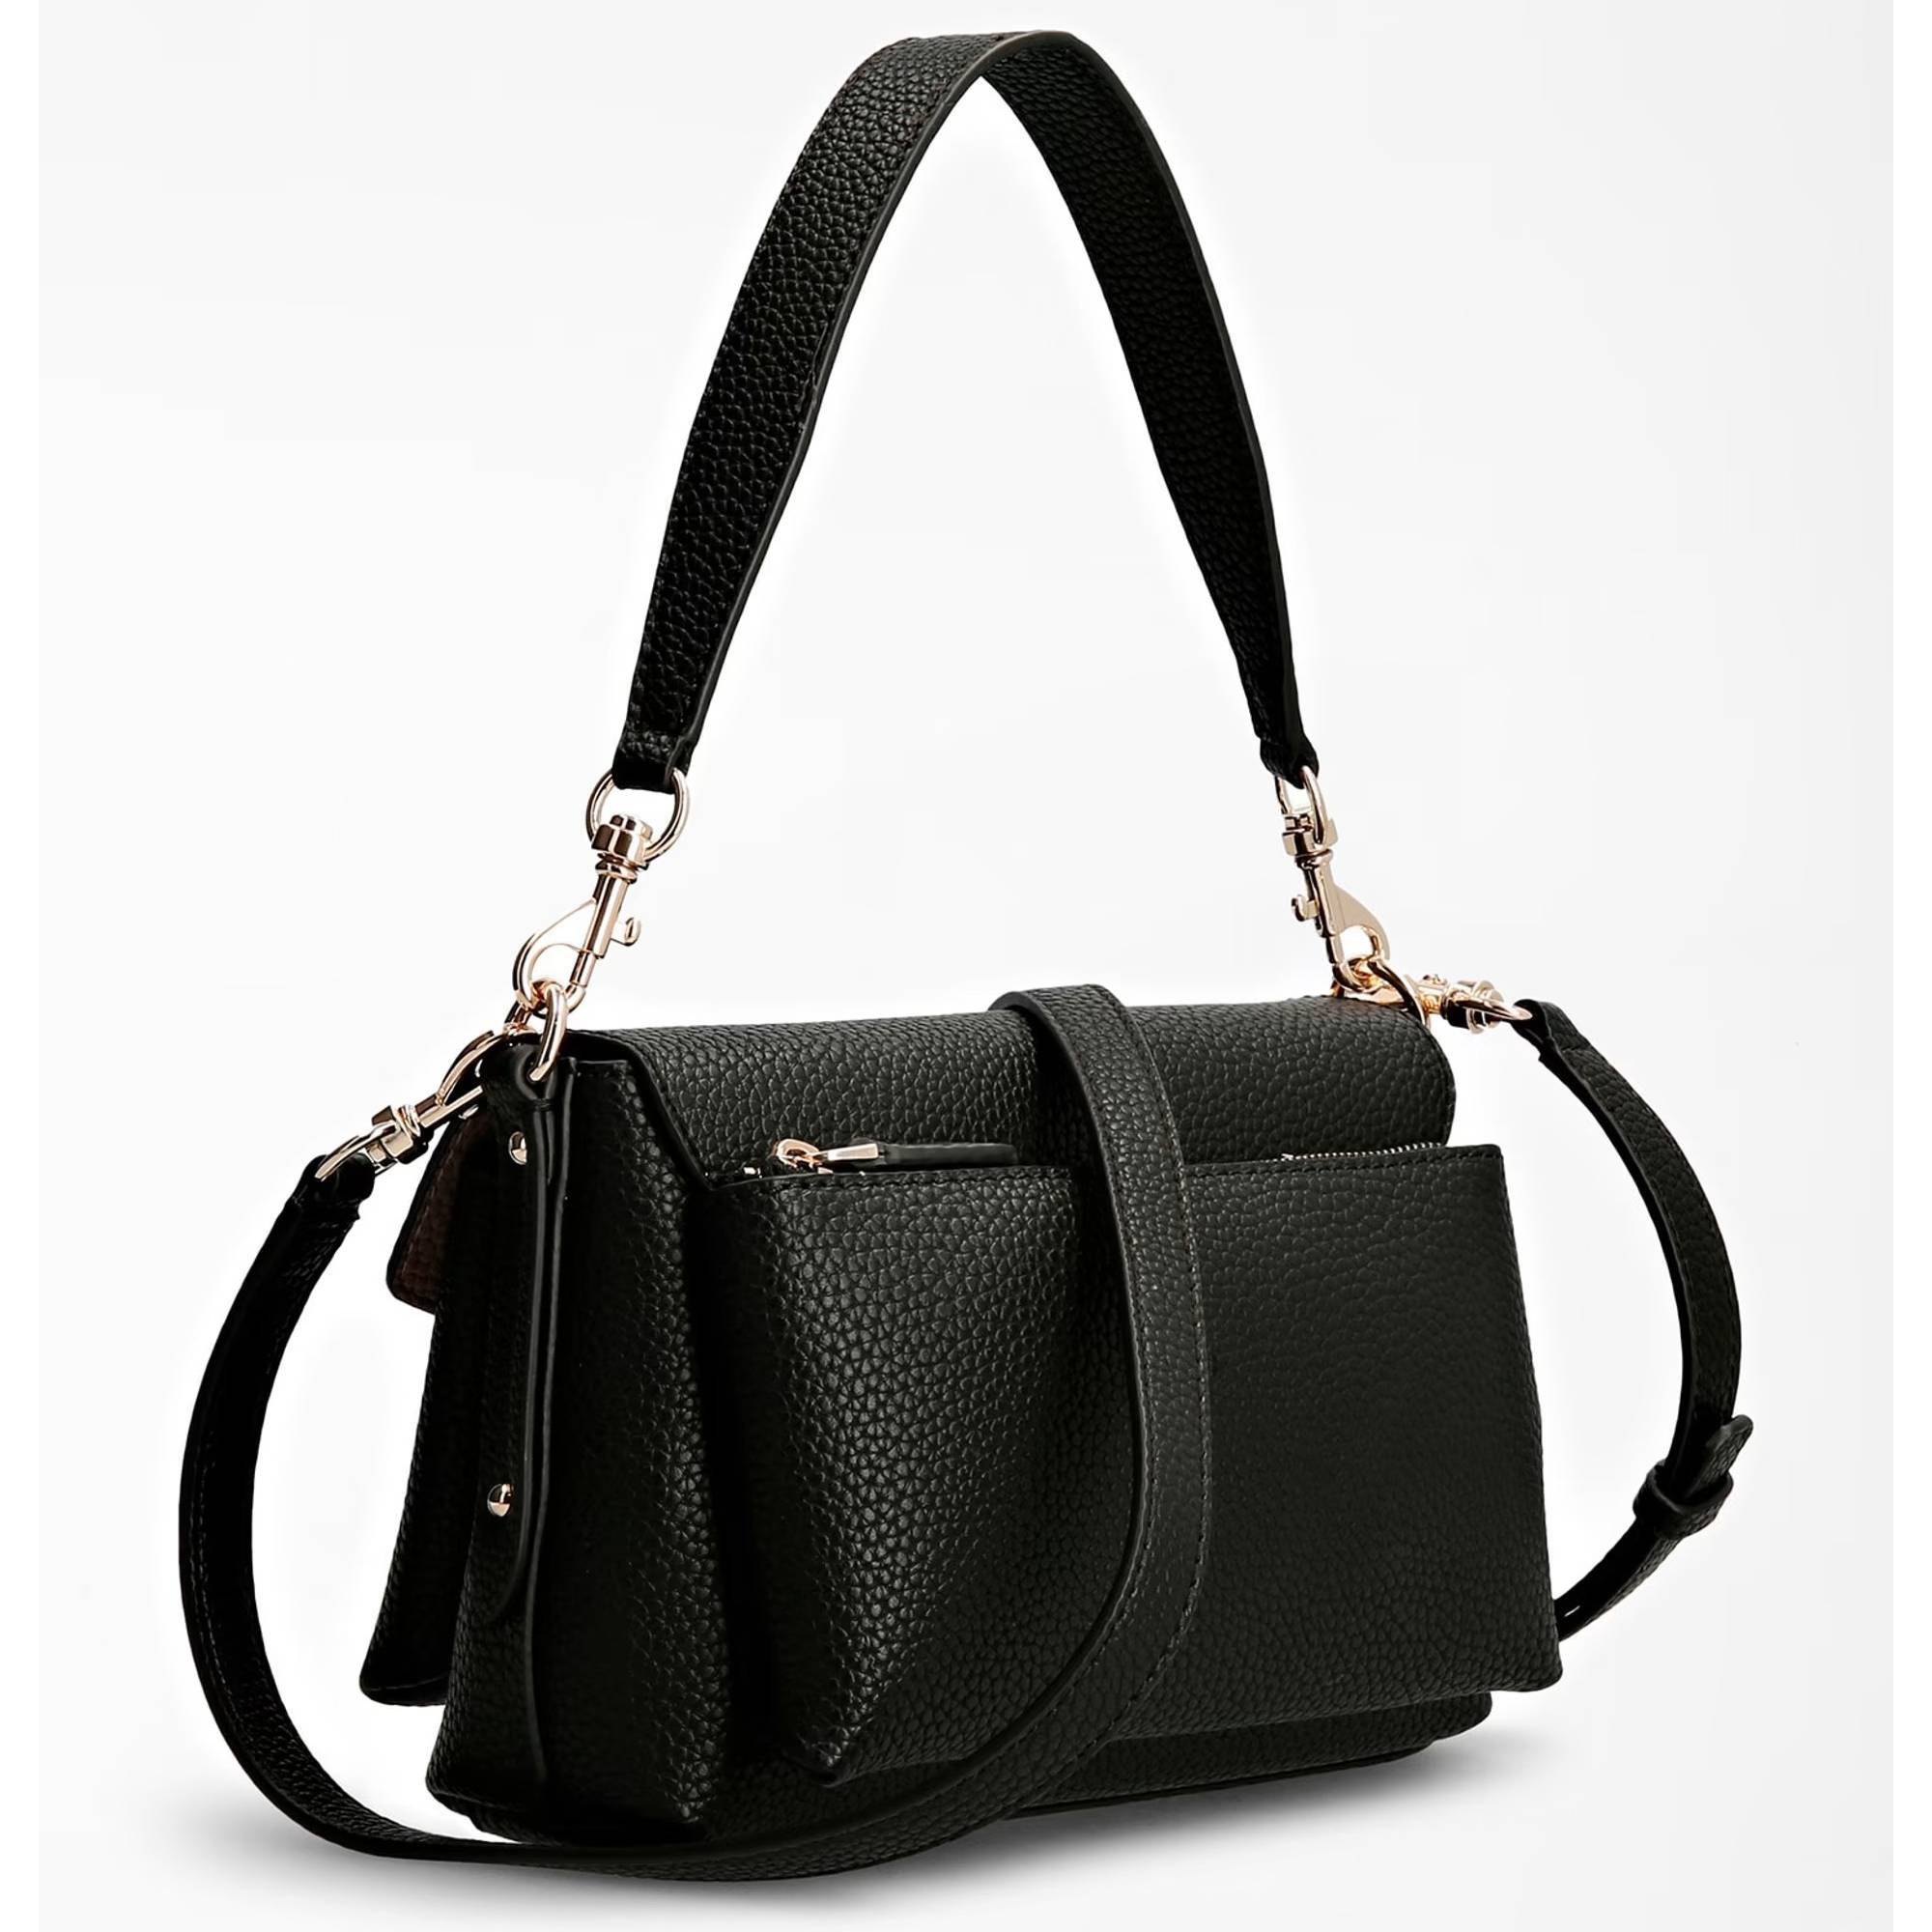 Mini sac Guess porté épaule eco brenton HWEVG839019 couleur noir vue de dos